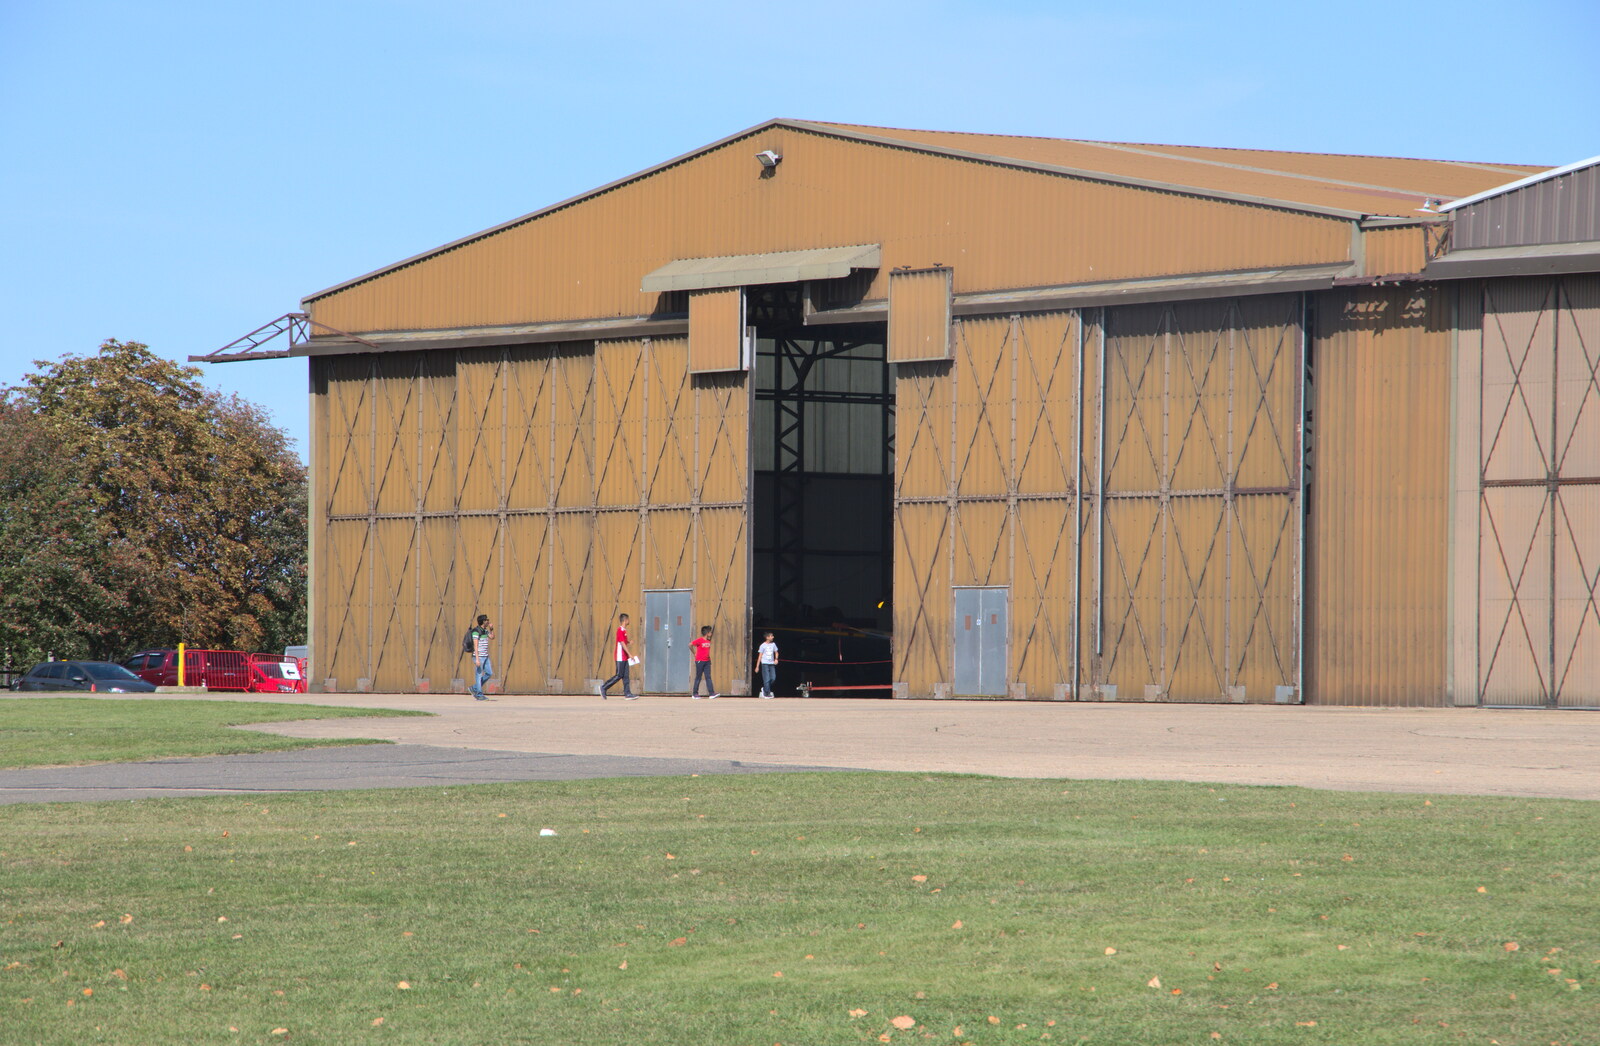 What looks like a T2 hangar at Duxford from The Duxford Dash, IWM Duxford, Cambridge - 13th September 2020